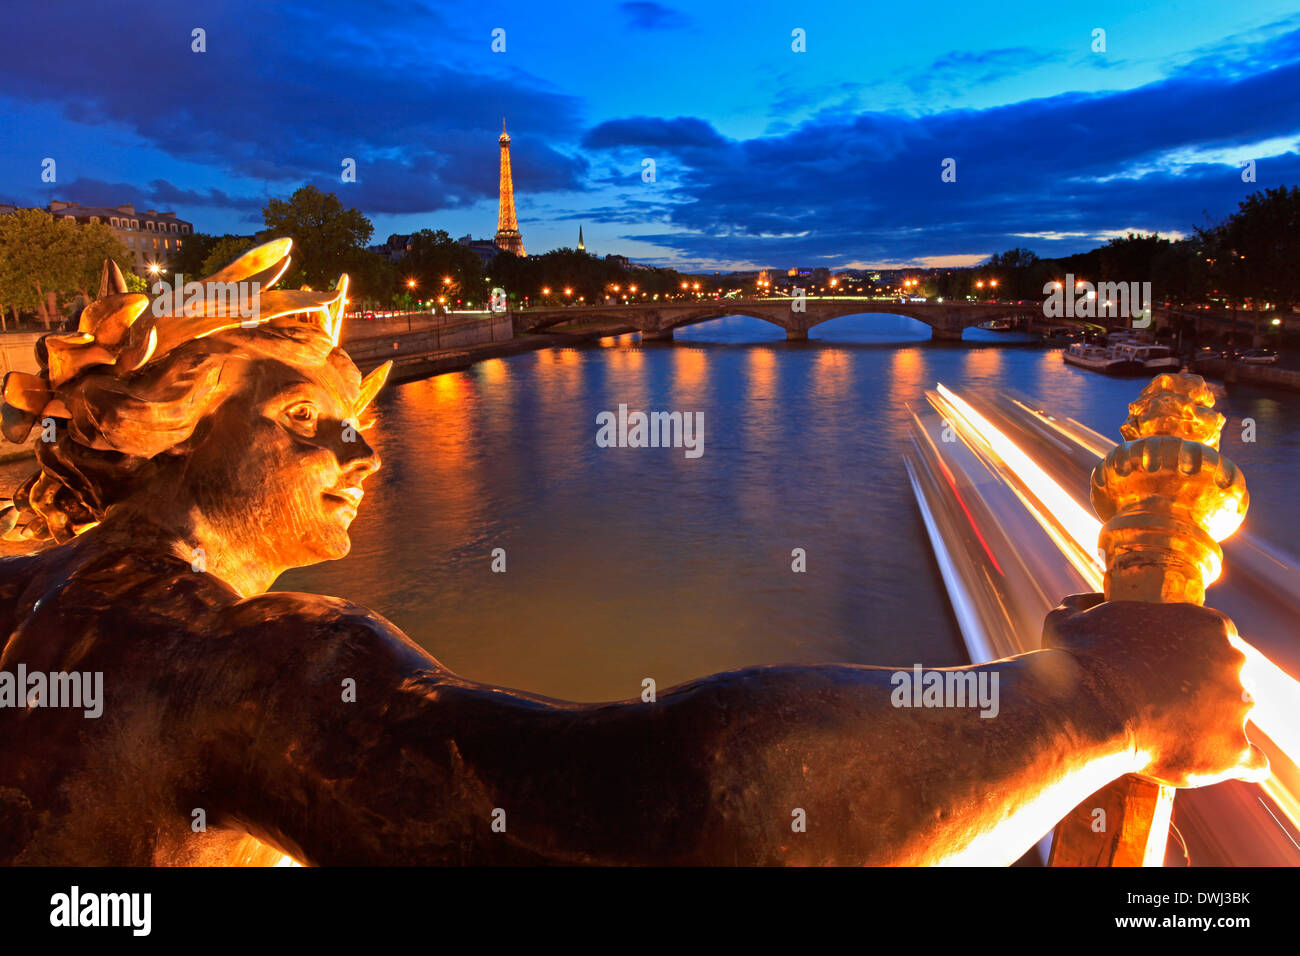 Alexandre III Bridge at dusk in Paris Stock Photo